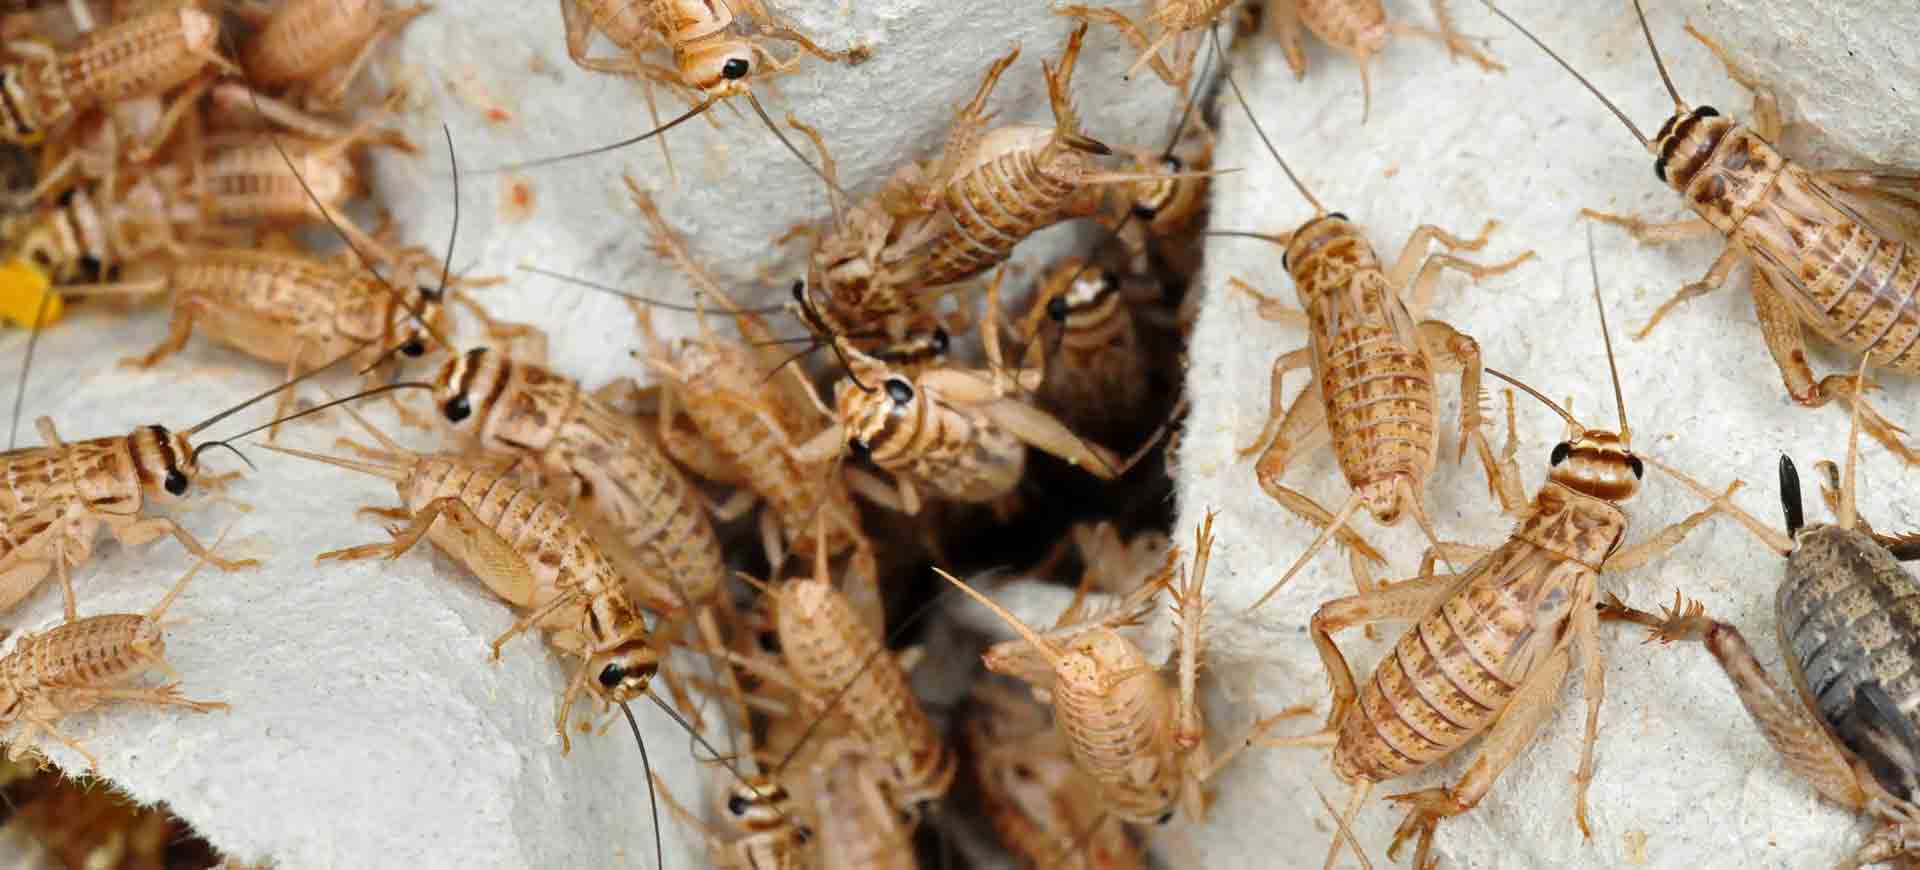 cricket pest control san carlos